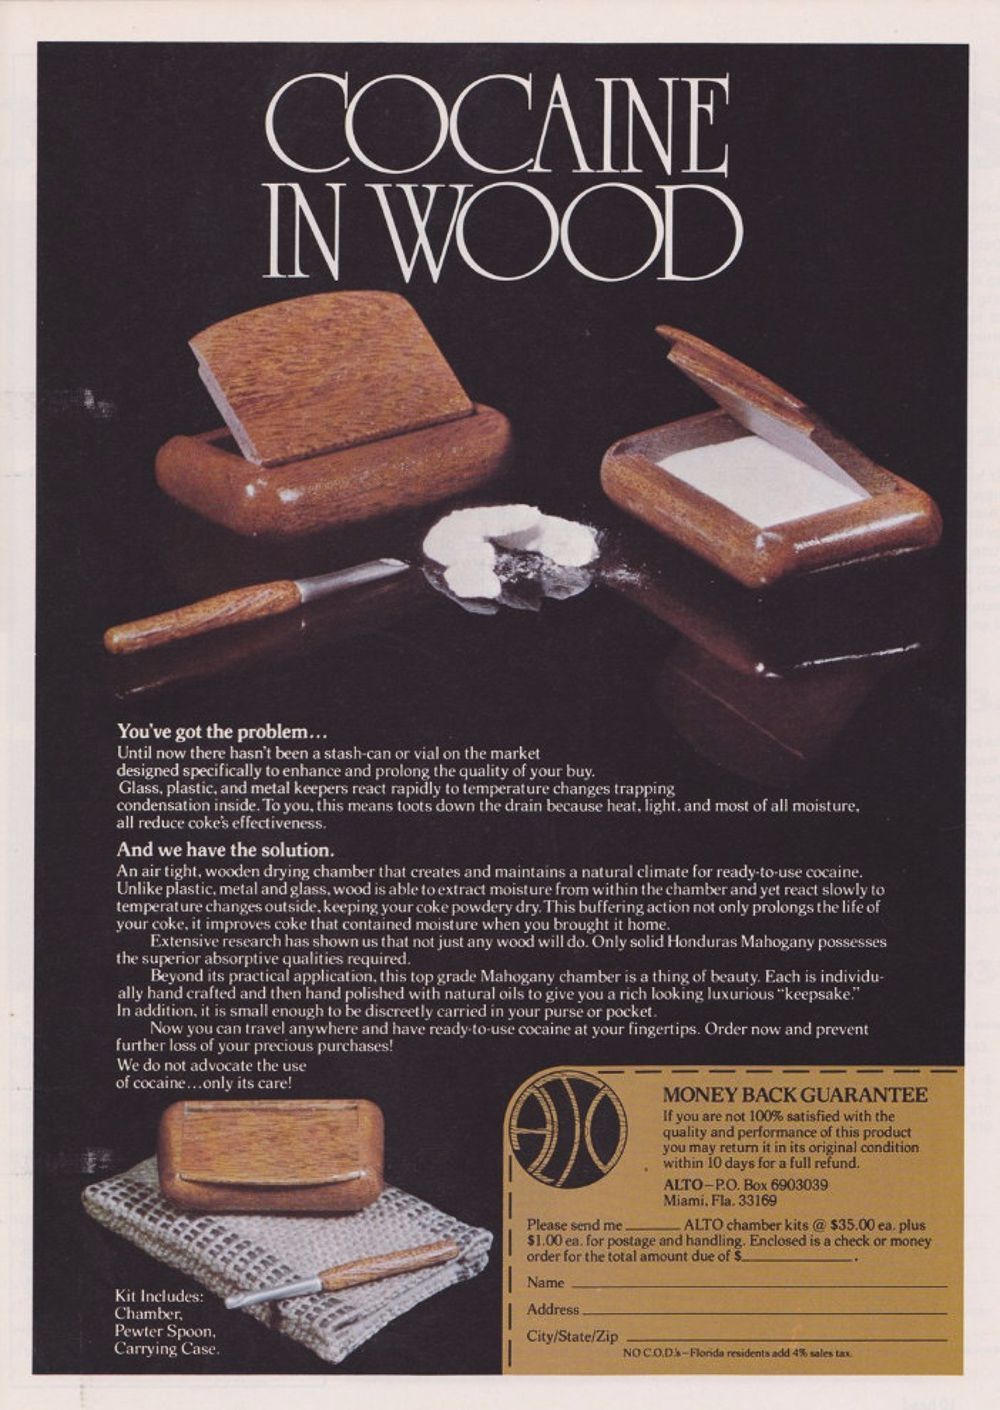 διαφημίσεις σύνεργων κοκαΐνης δεκαετία του 1970